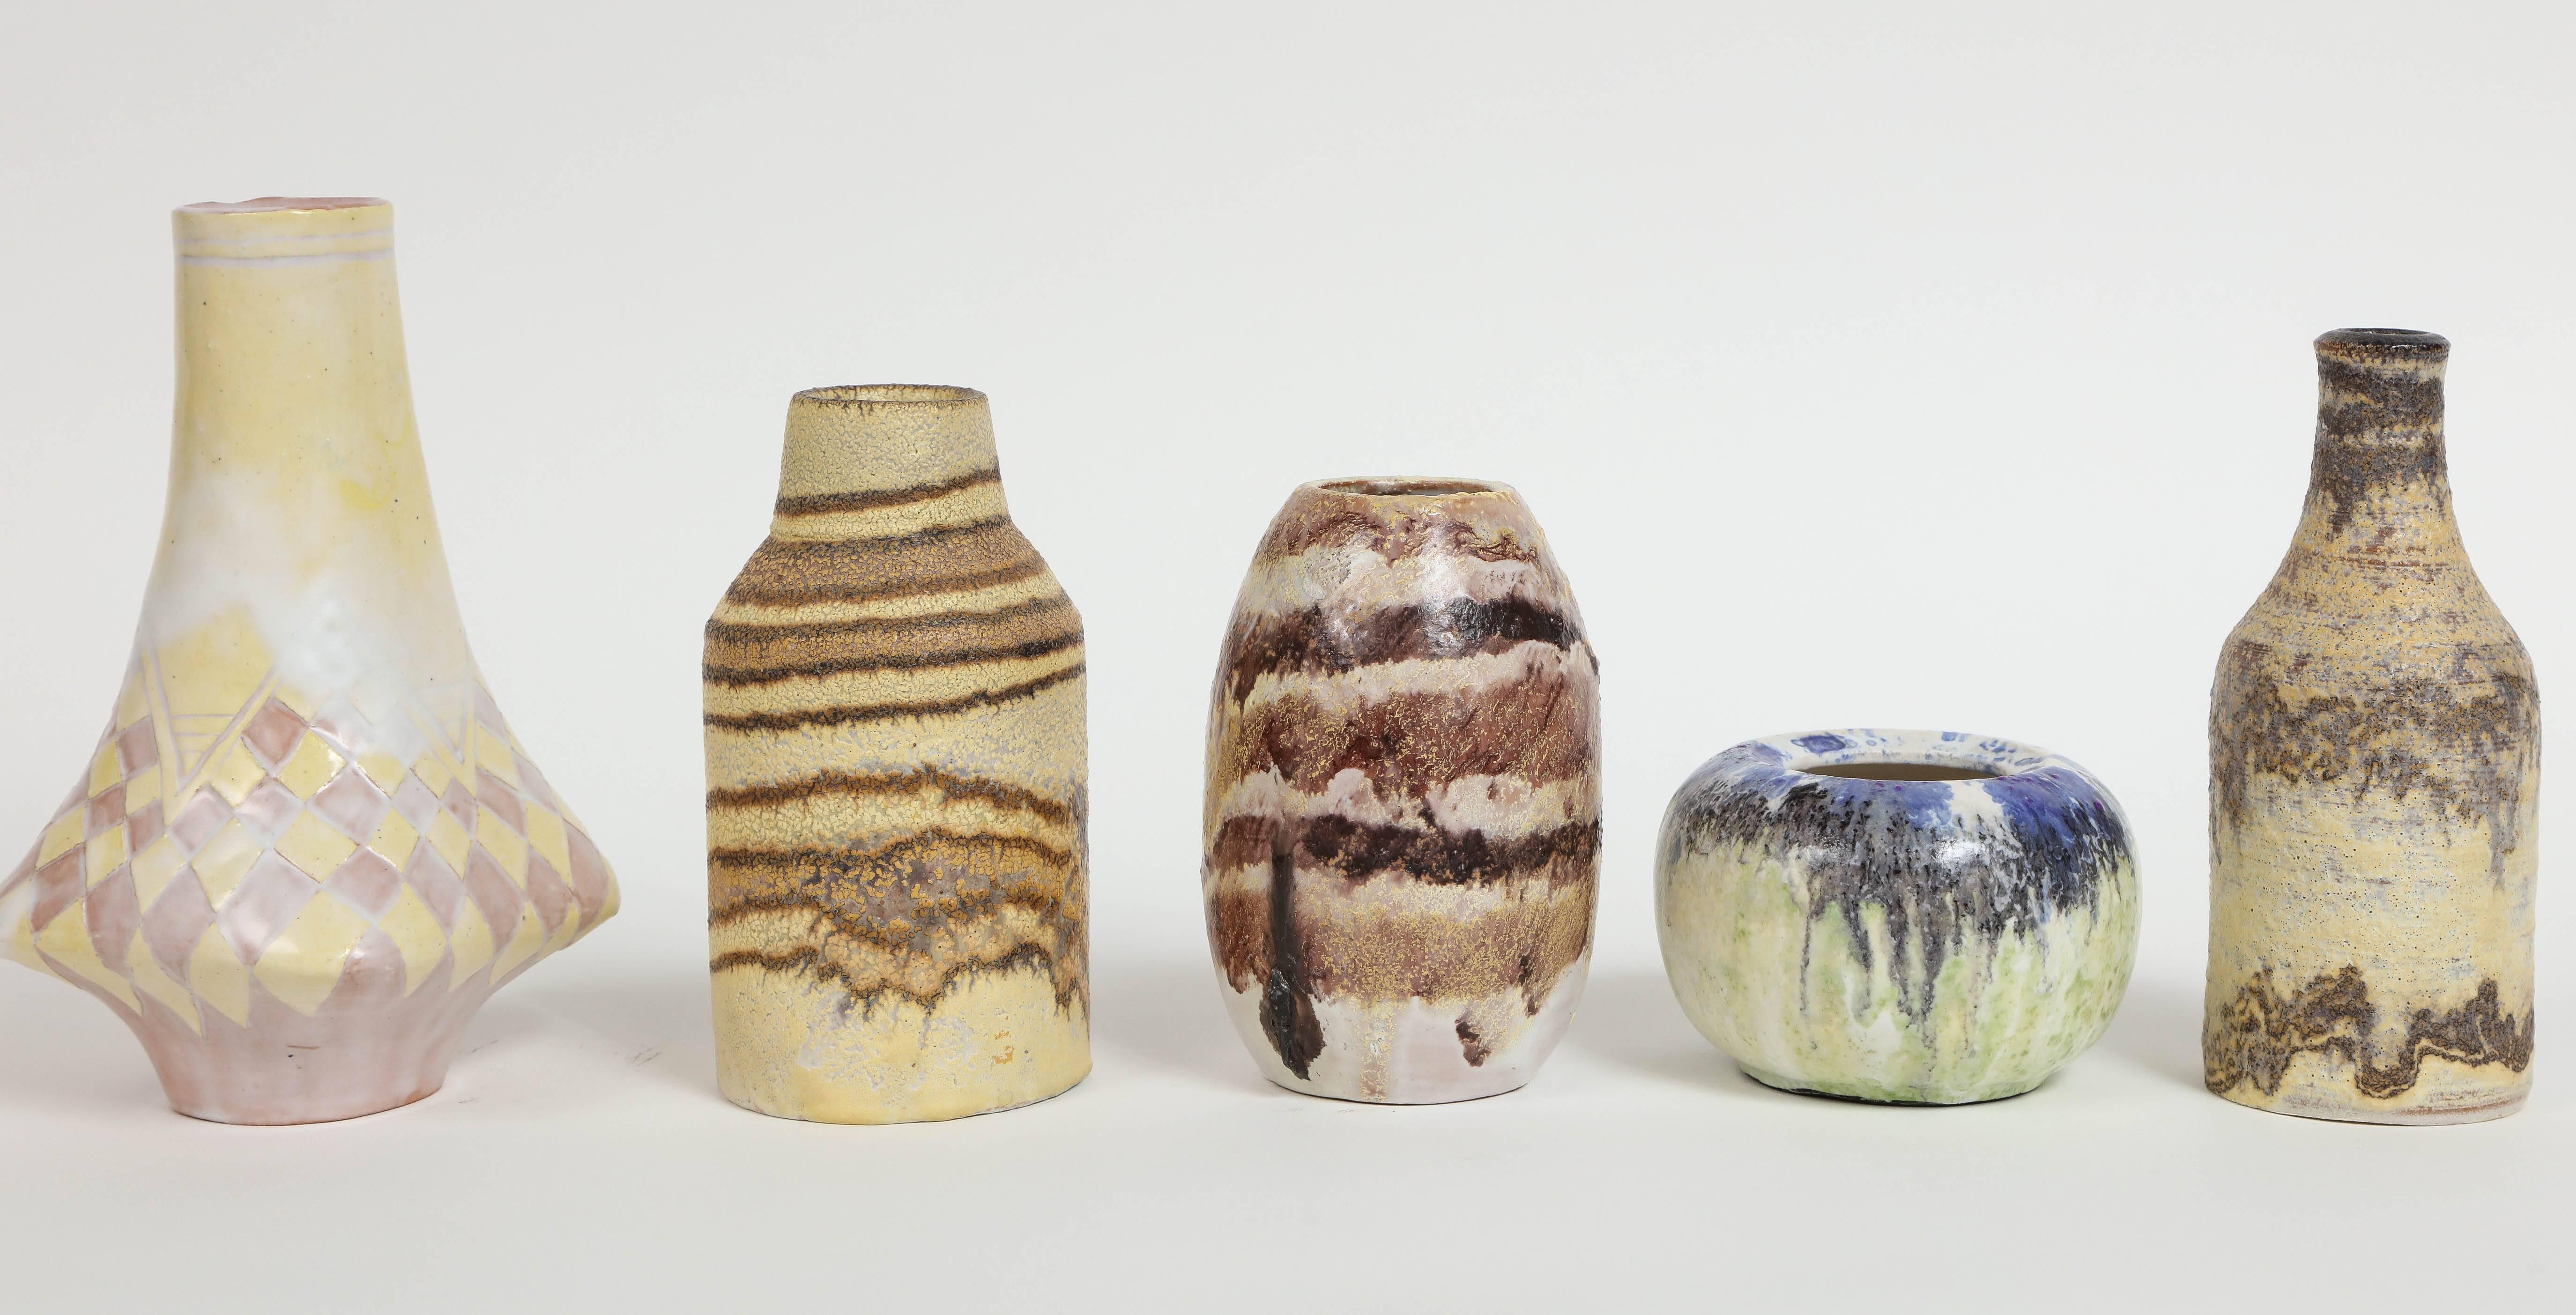 Mid-Century Modern Marcello Fantoni Small Ceramic Vases, circa 1960s - 1970s For Sale